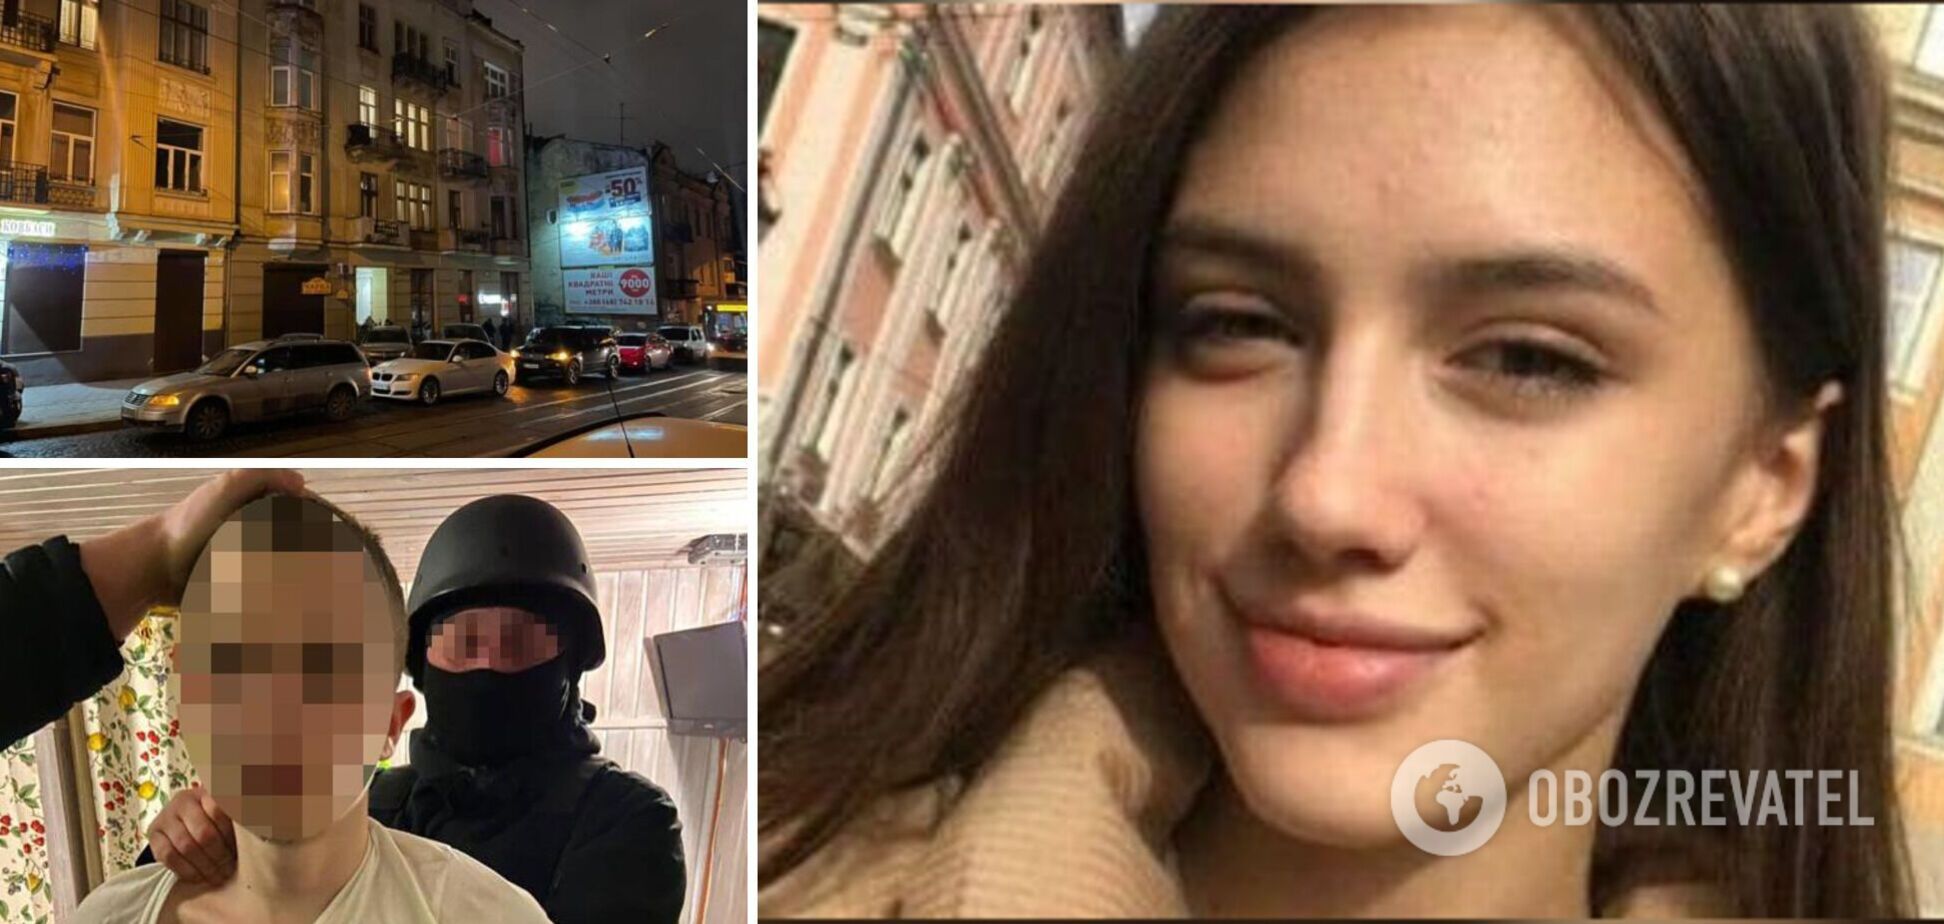 Во Львове парень 'на почве ревности' убил 19-летнюю студентку: новые подробности трагедии